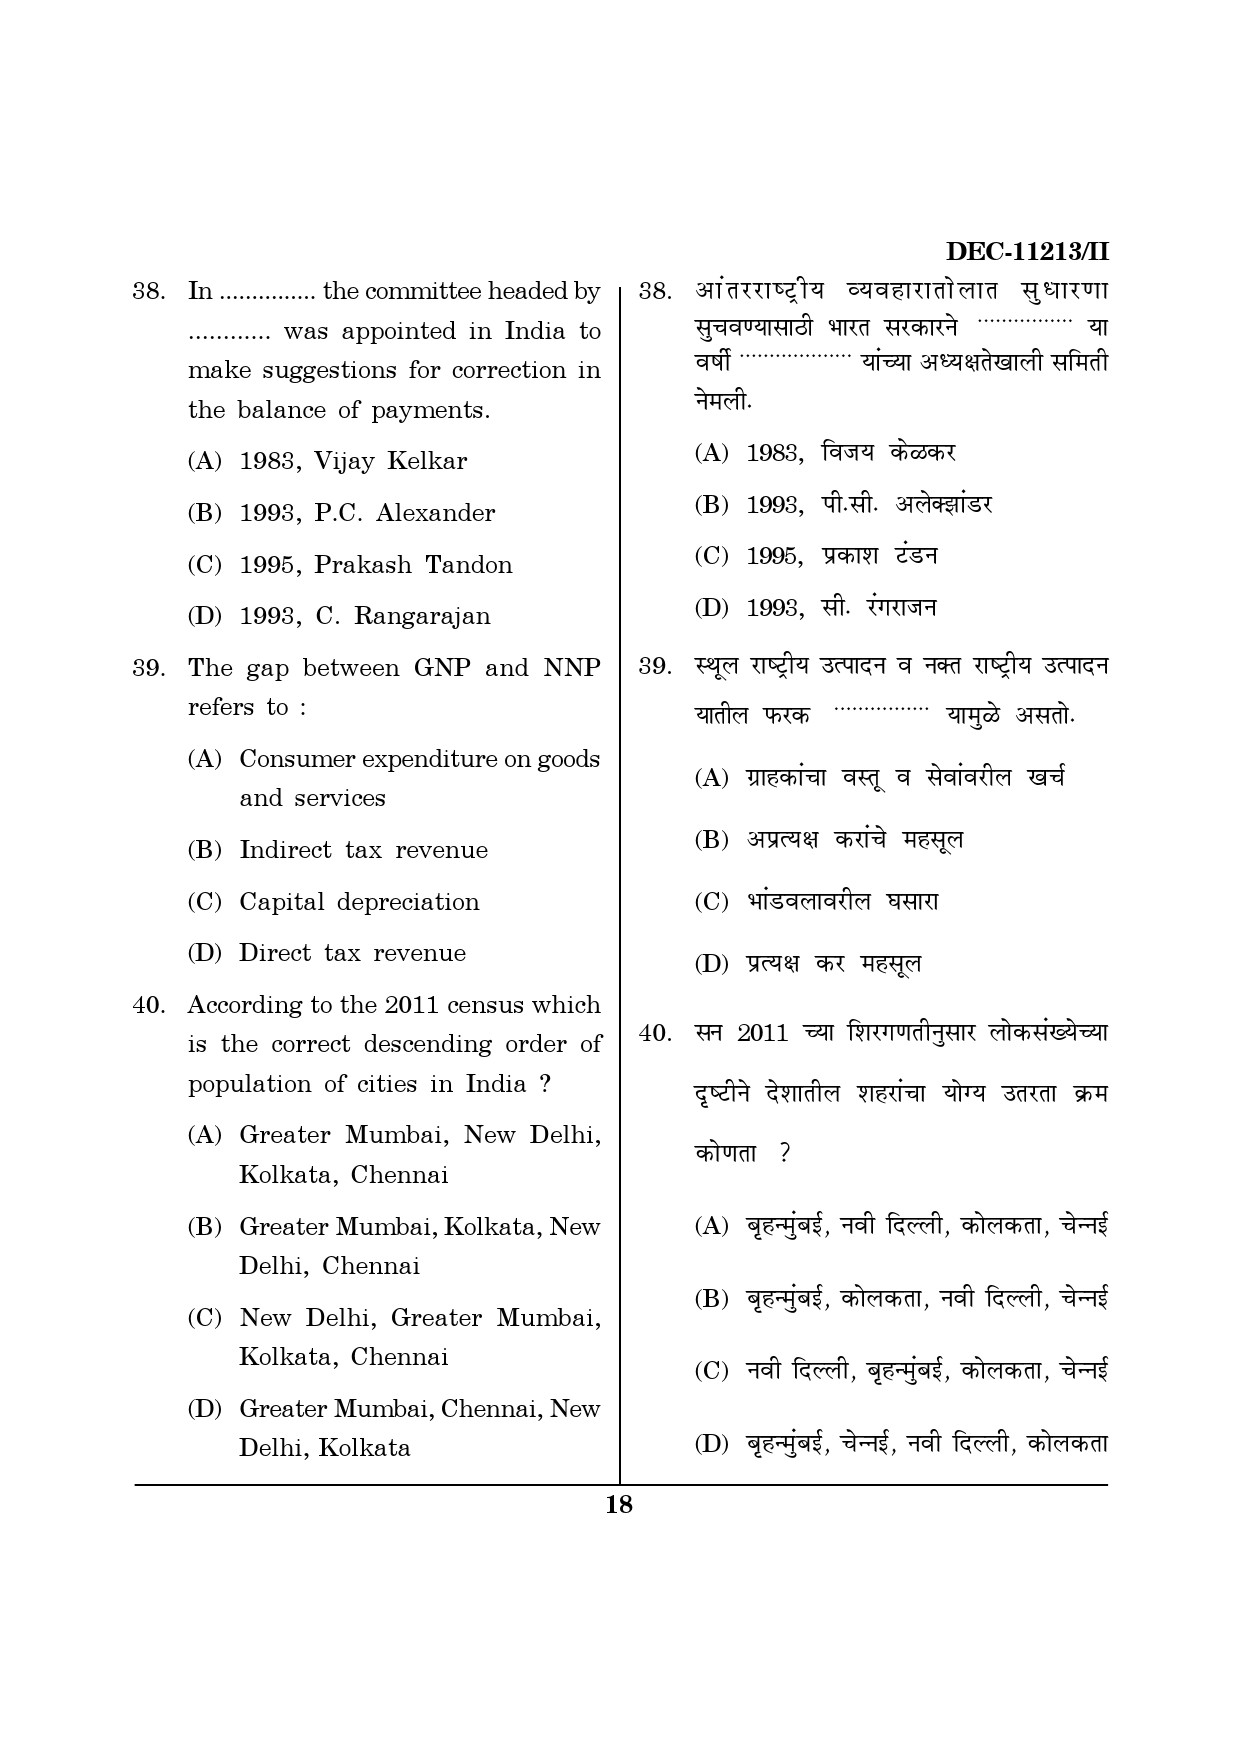 Maharashtra SET Economics Question Paper II December 2013 17